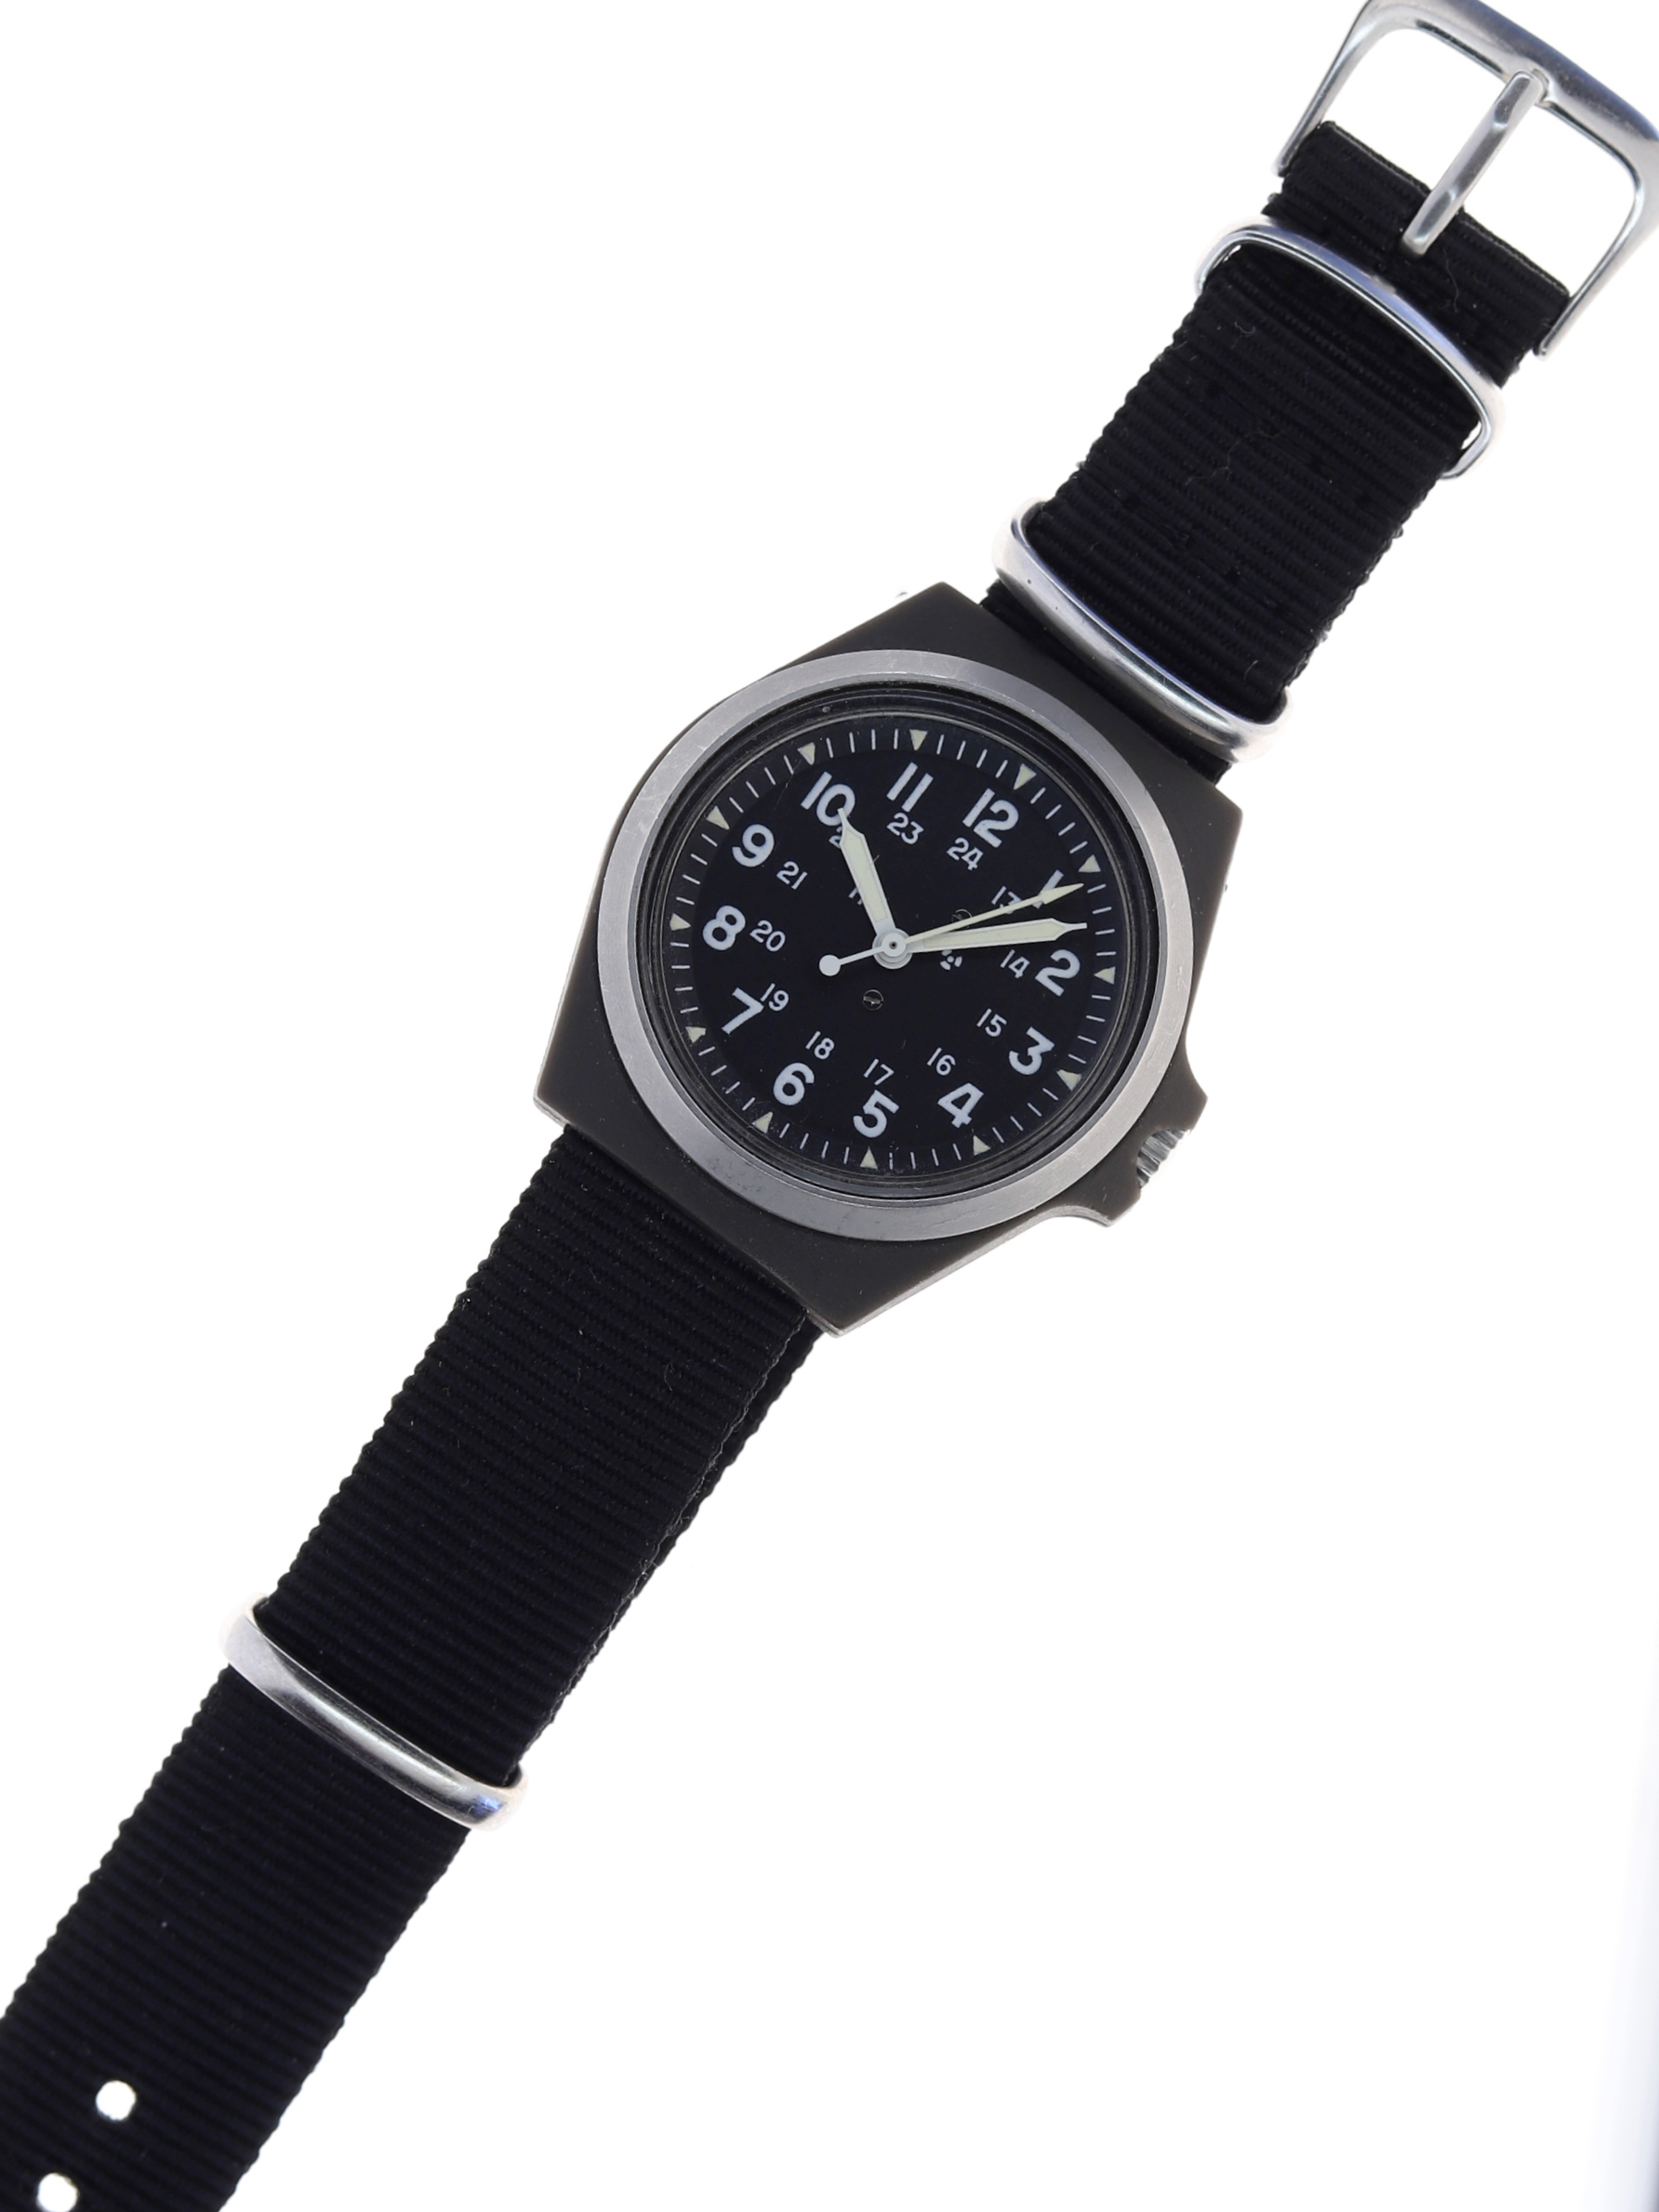 【9月末まで出品】Stocker & Yale  SANDY 184A 手巻 腕時計(アナログ) 送料無料日本正規品